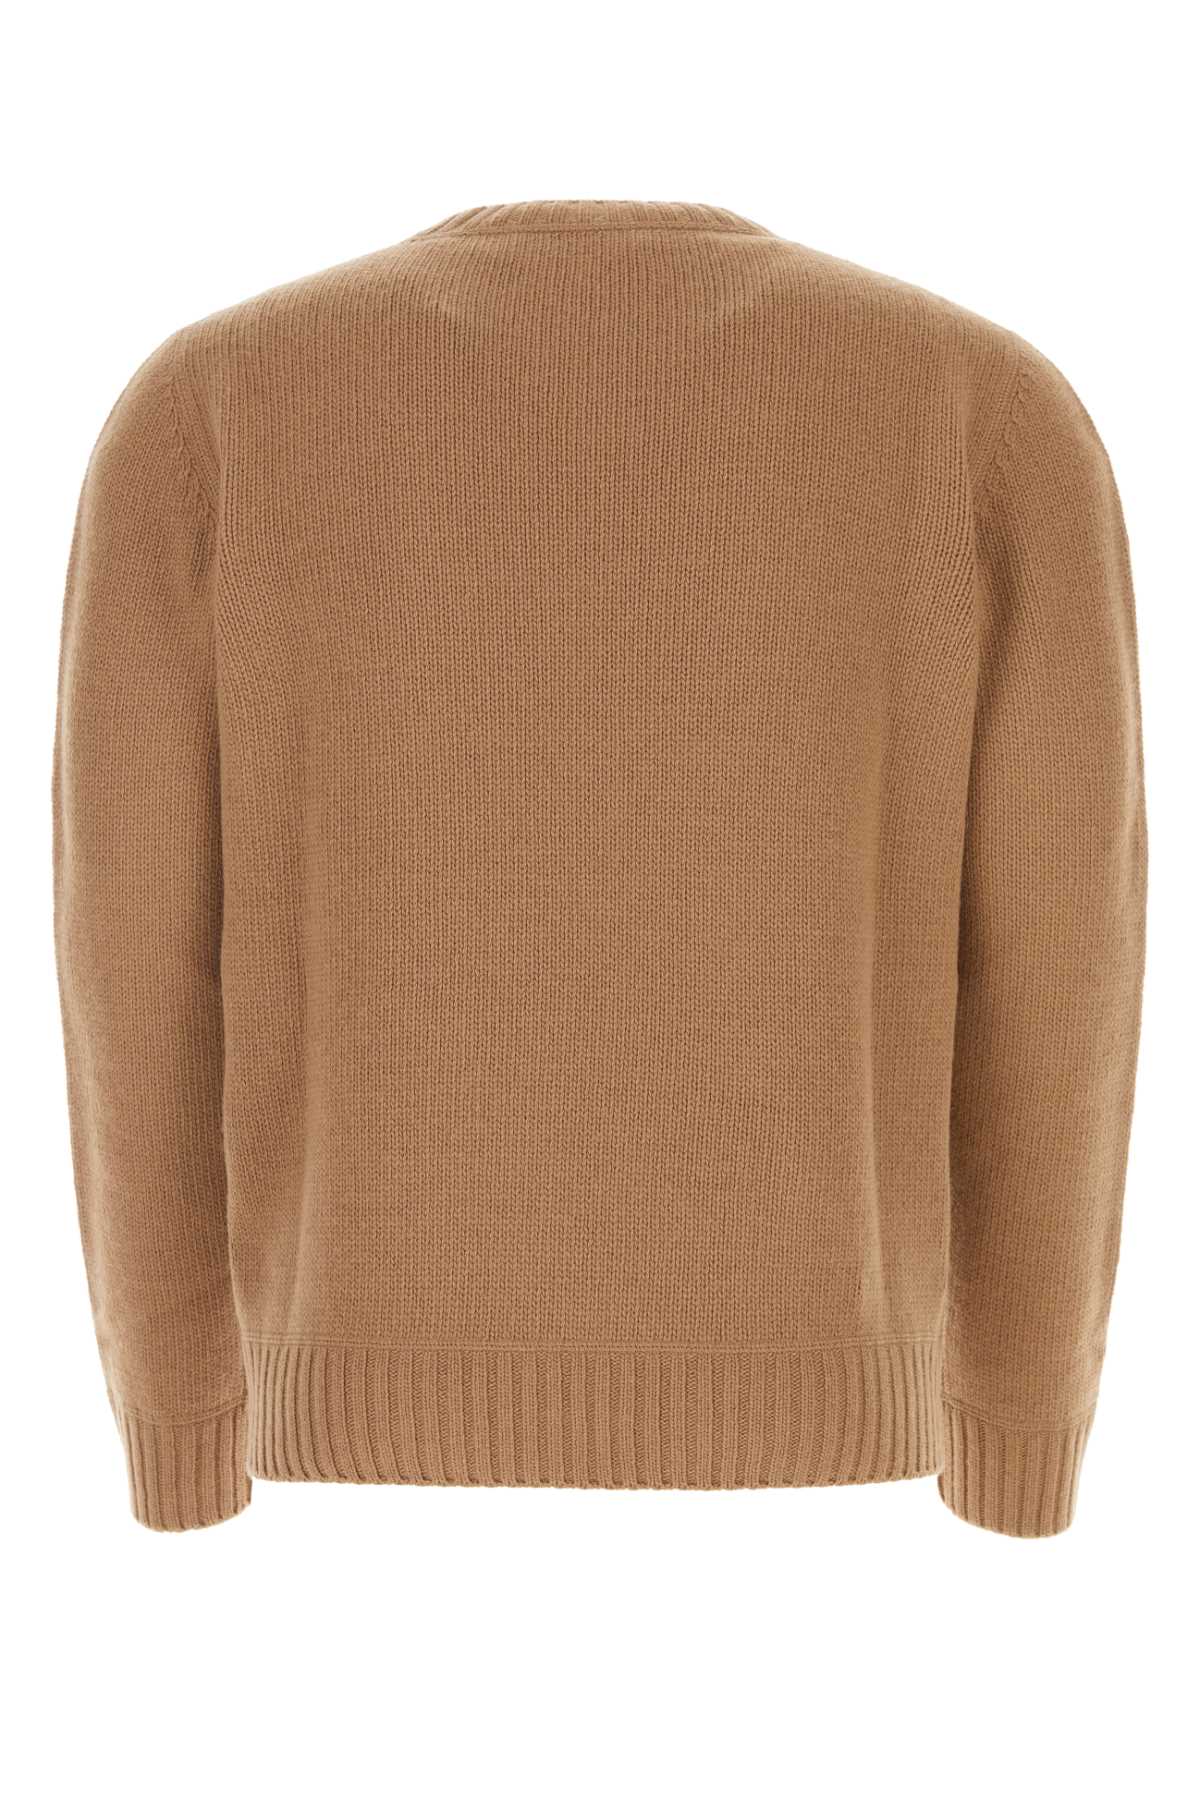 Shop Prada Biscuit Wool Blend Sweater In F0040